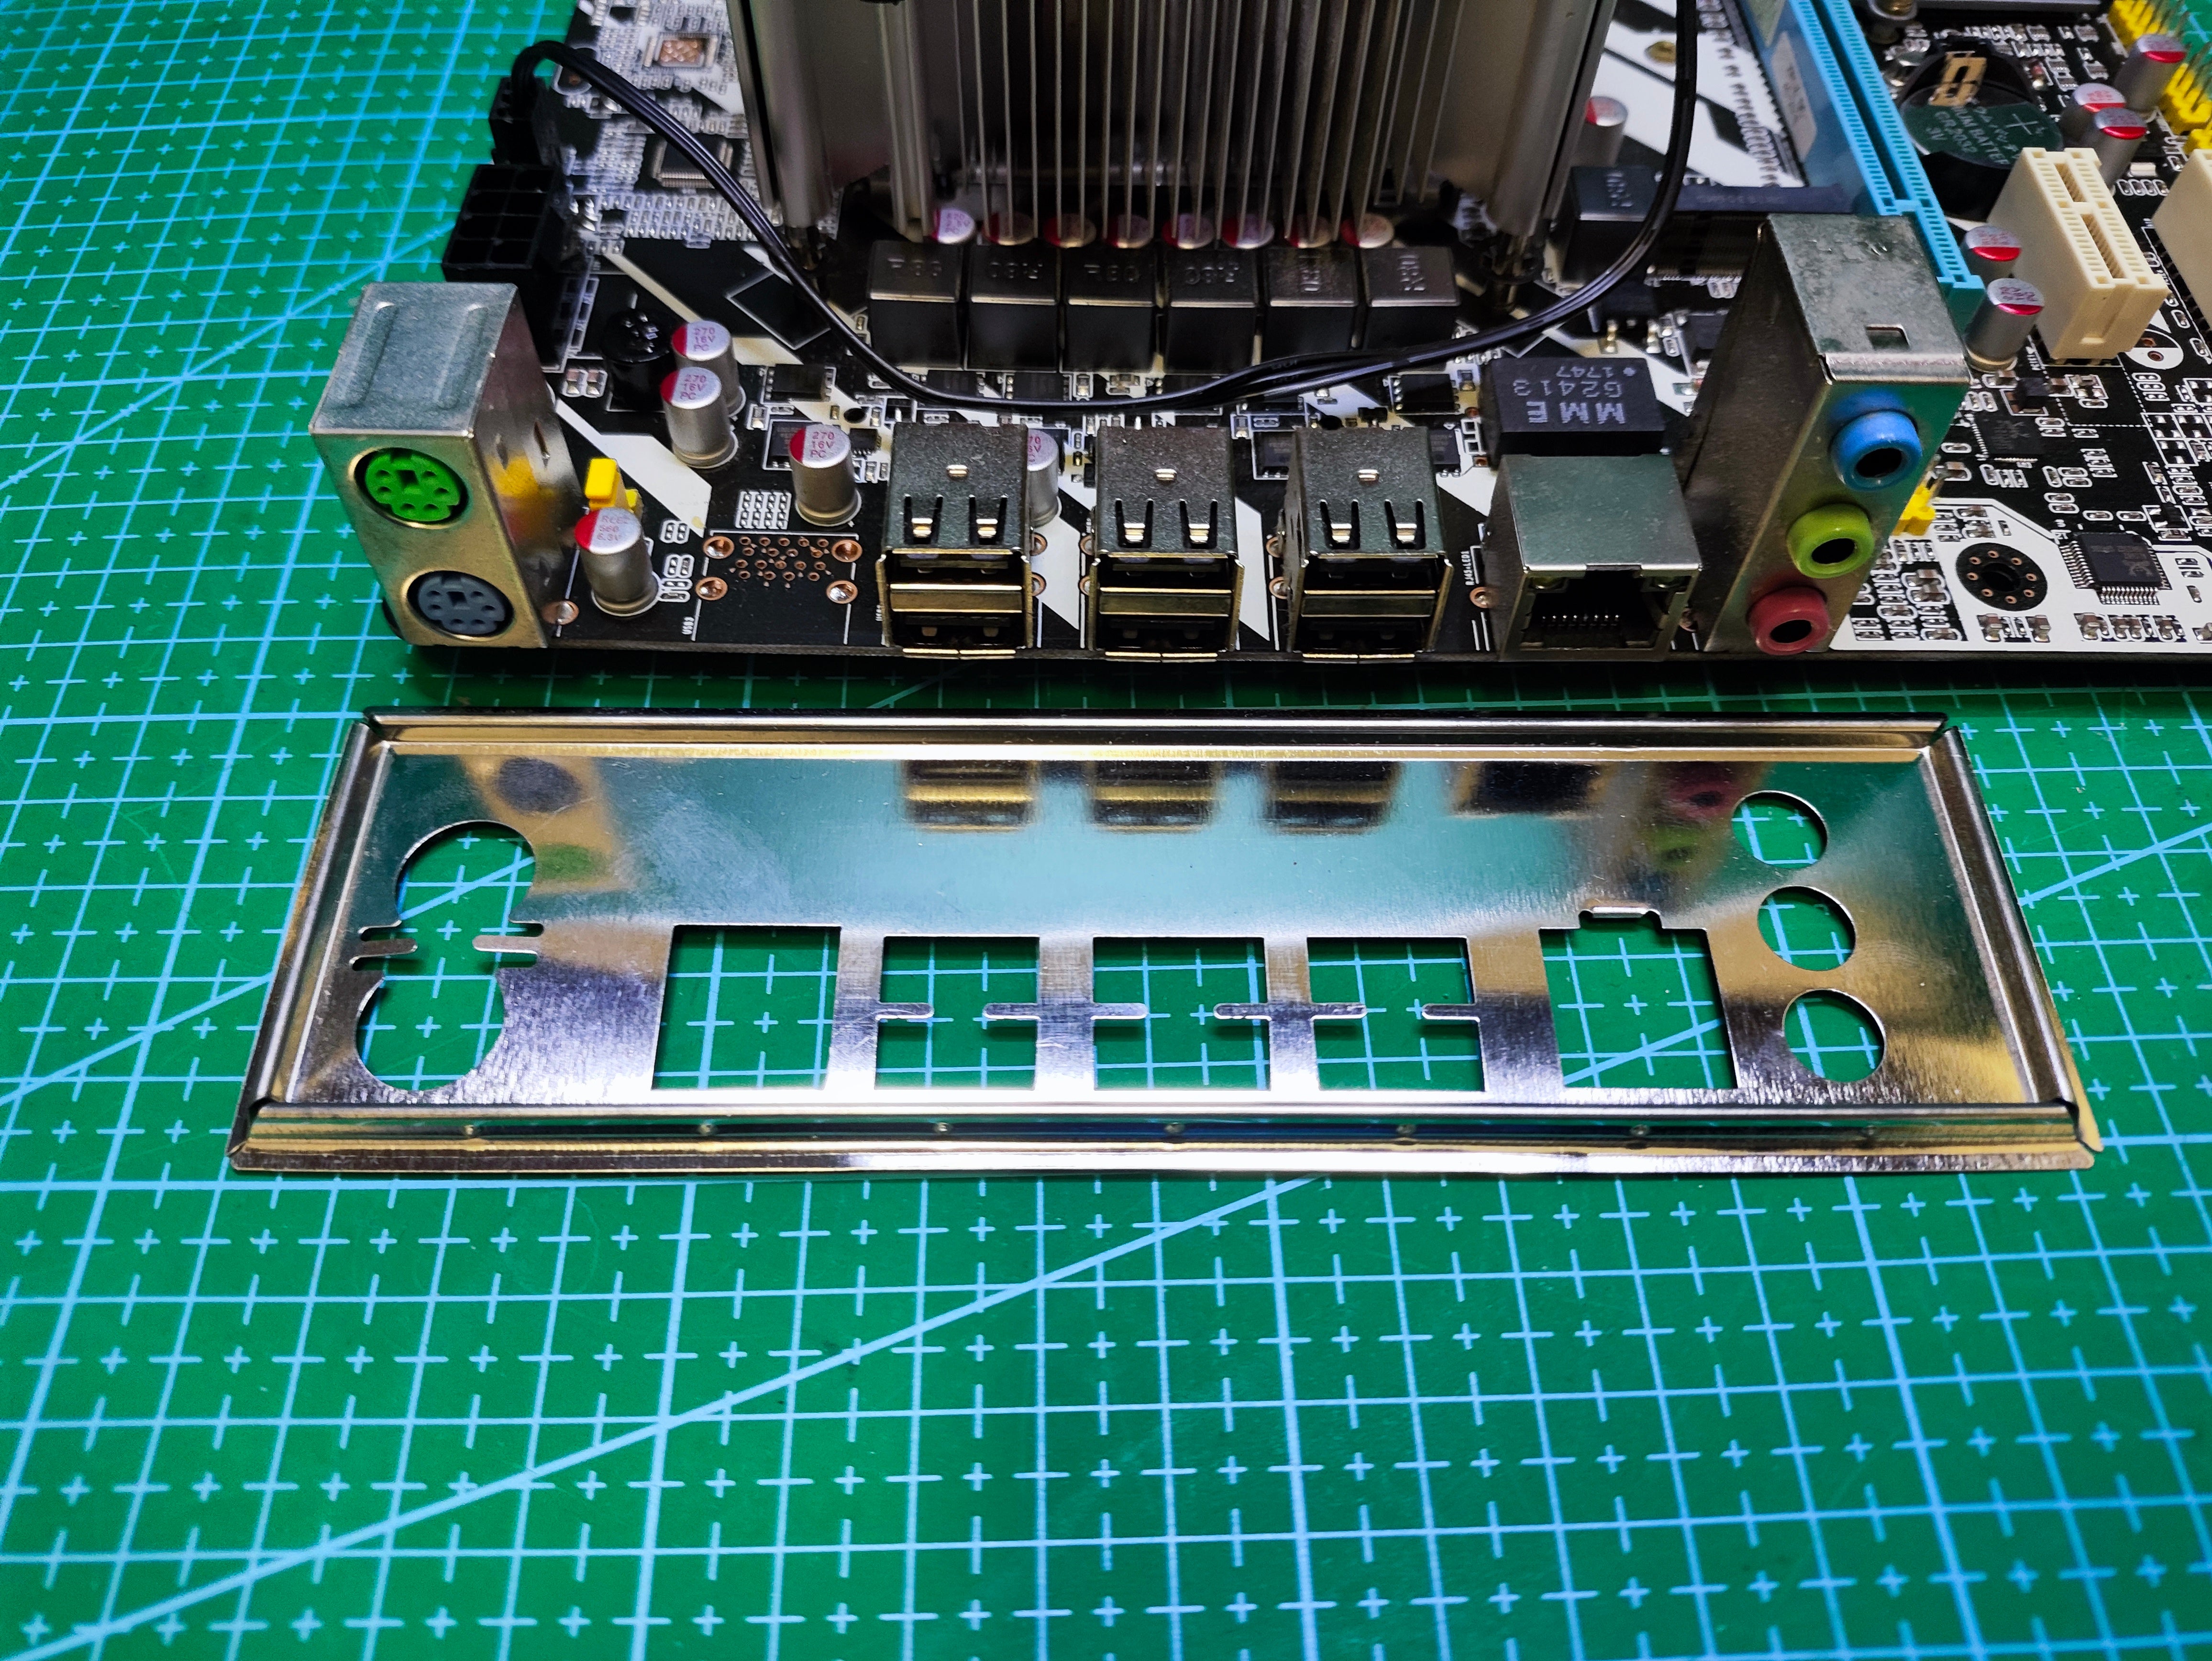 Motherboard+CPU+32G RAM+ FAN set